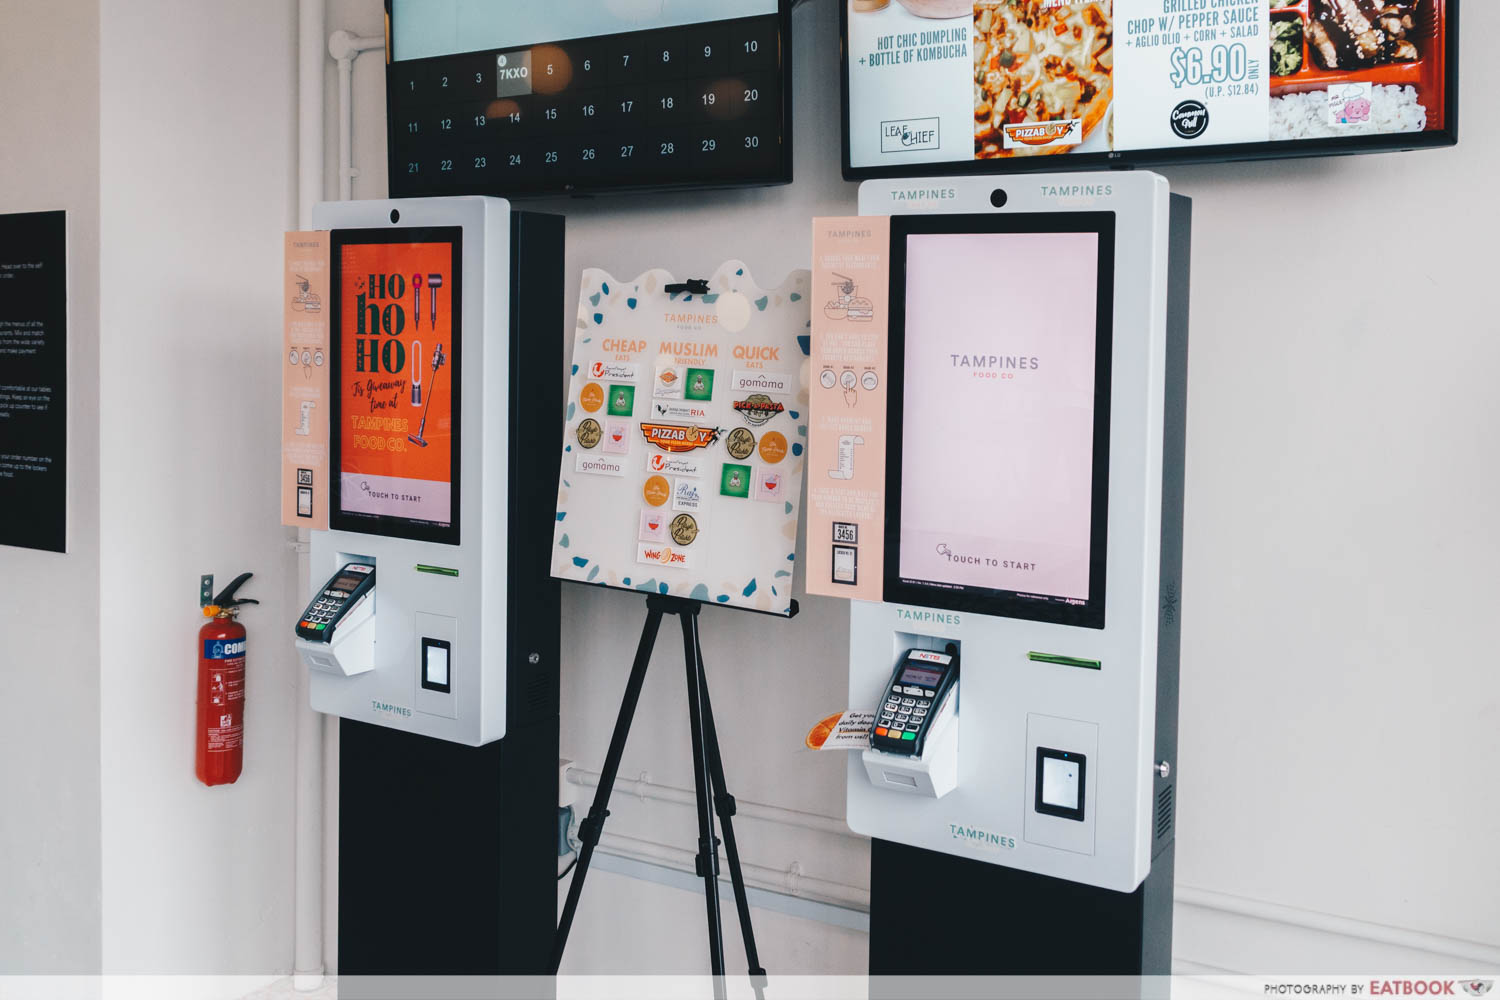 Self-order kiosks